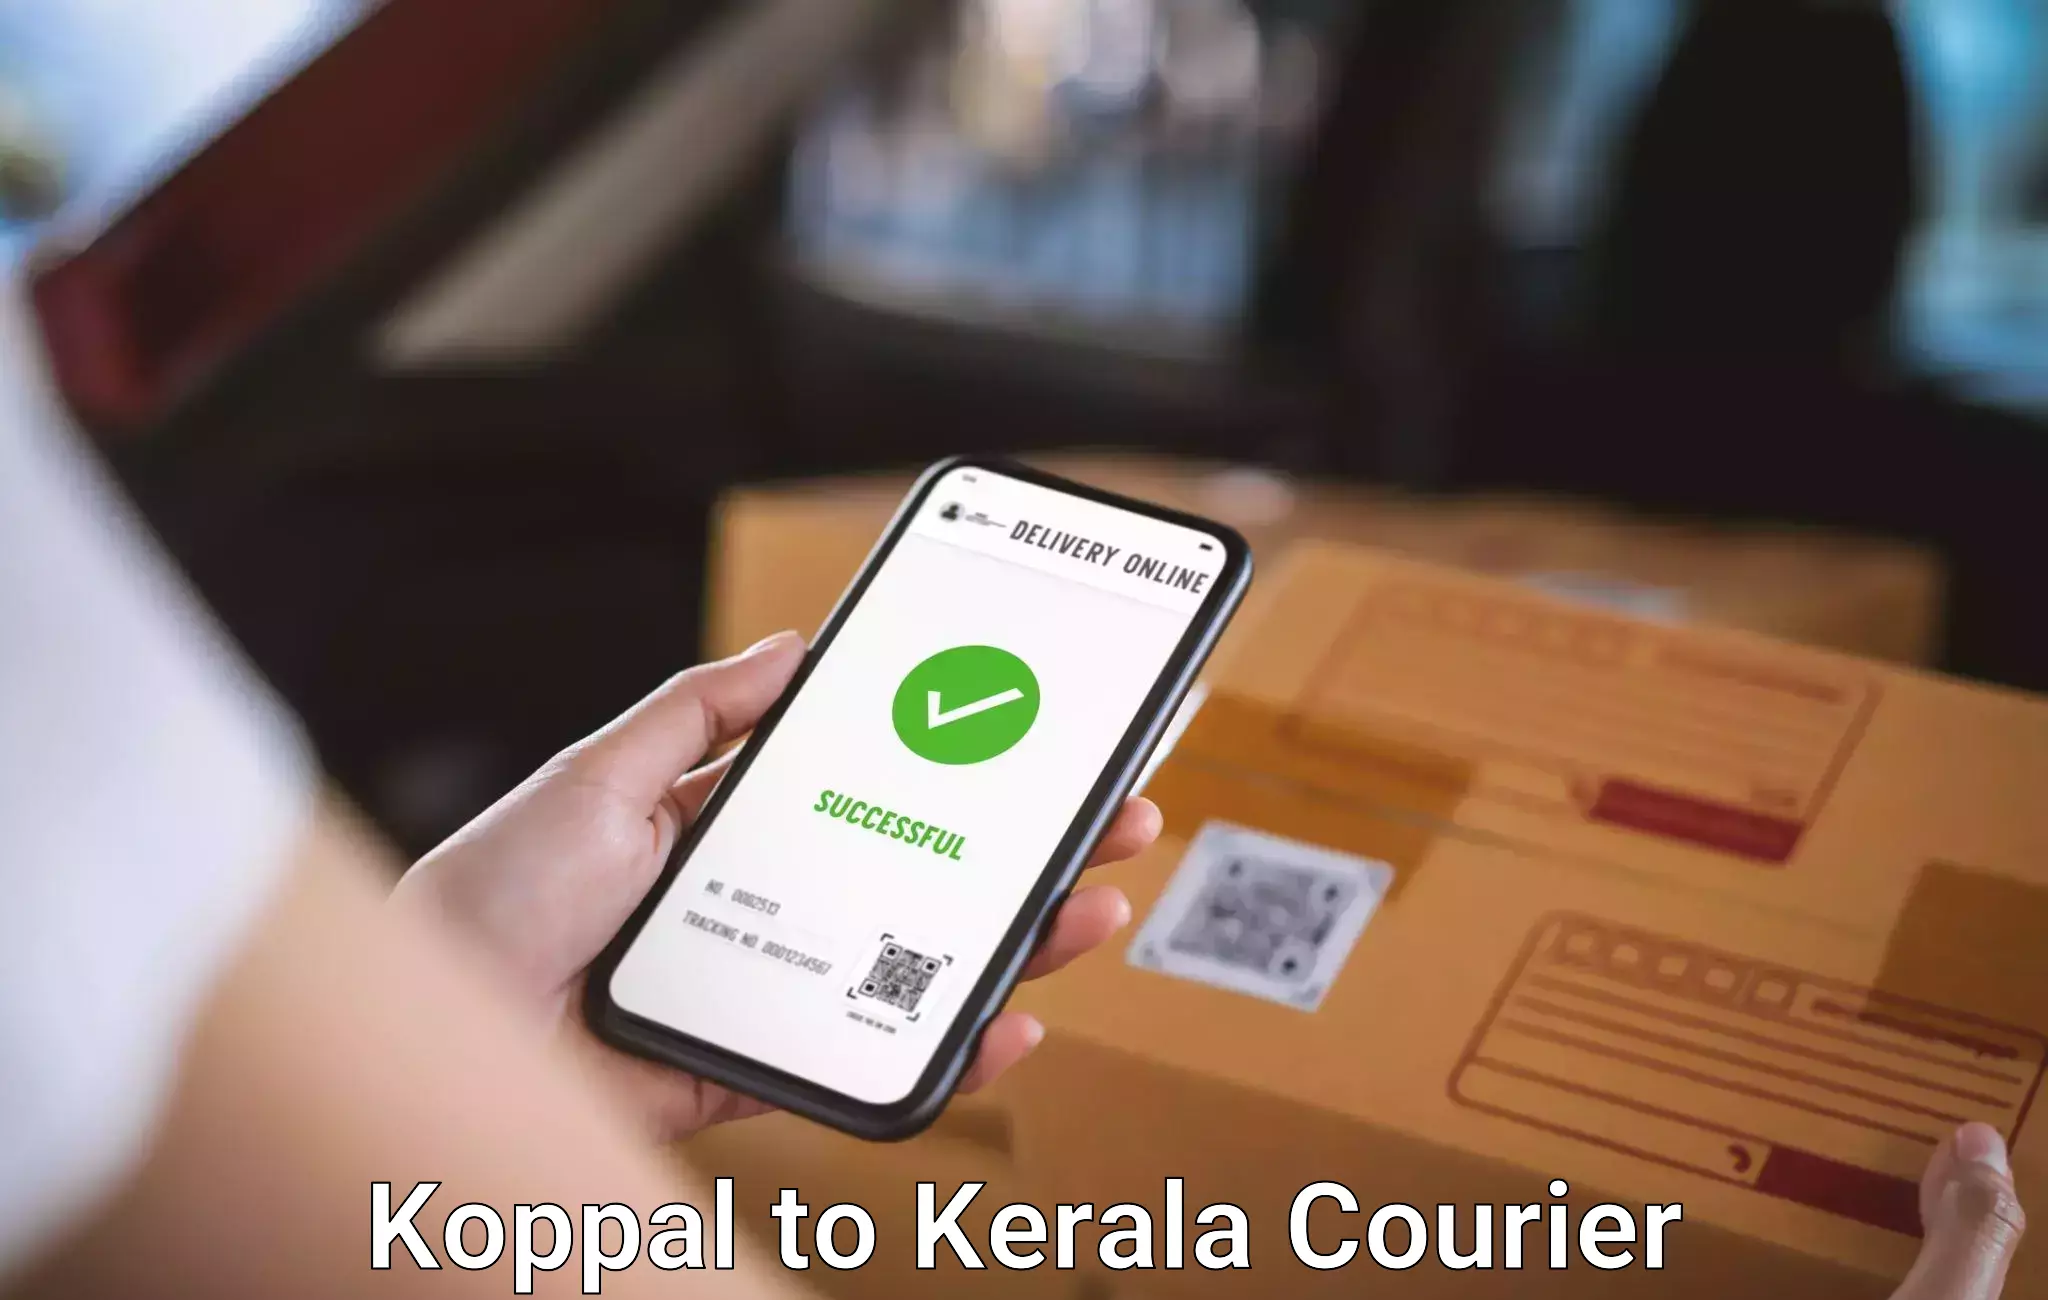 Personalized luggage shipping Koppal to Mahatma Gandhi University Kottayam